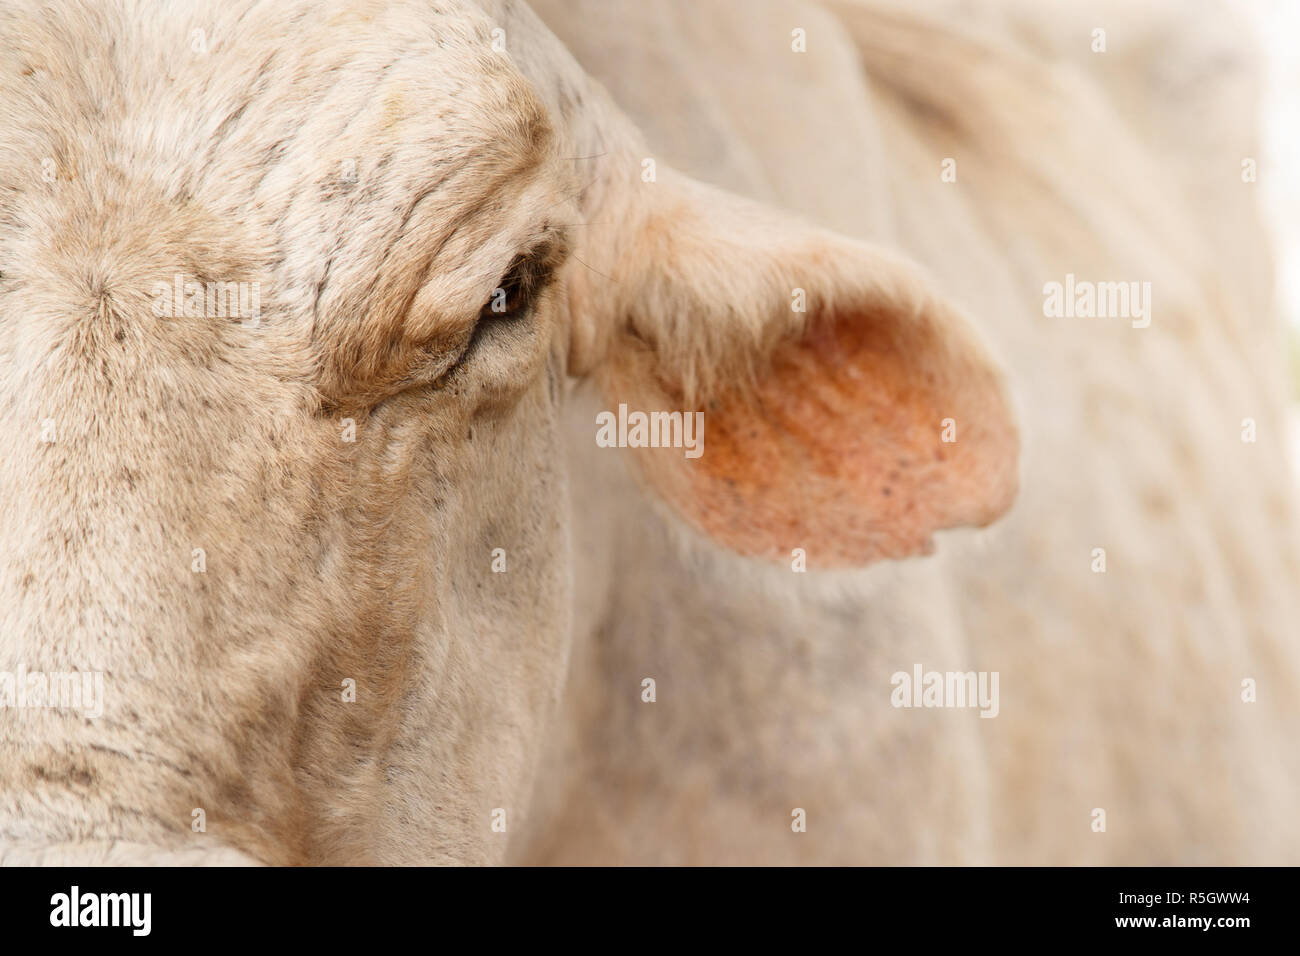 Dettaglio e Close-up di mucca faccia in fattoria Foto Stock